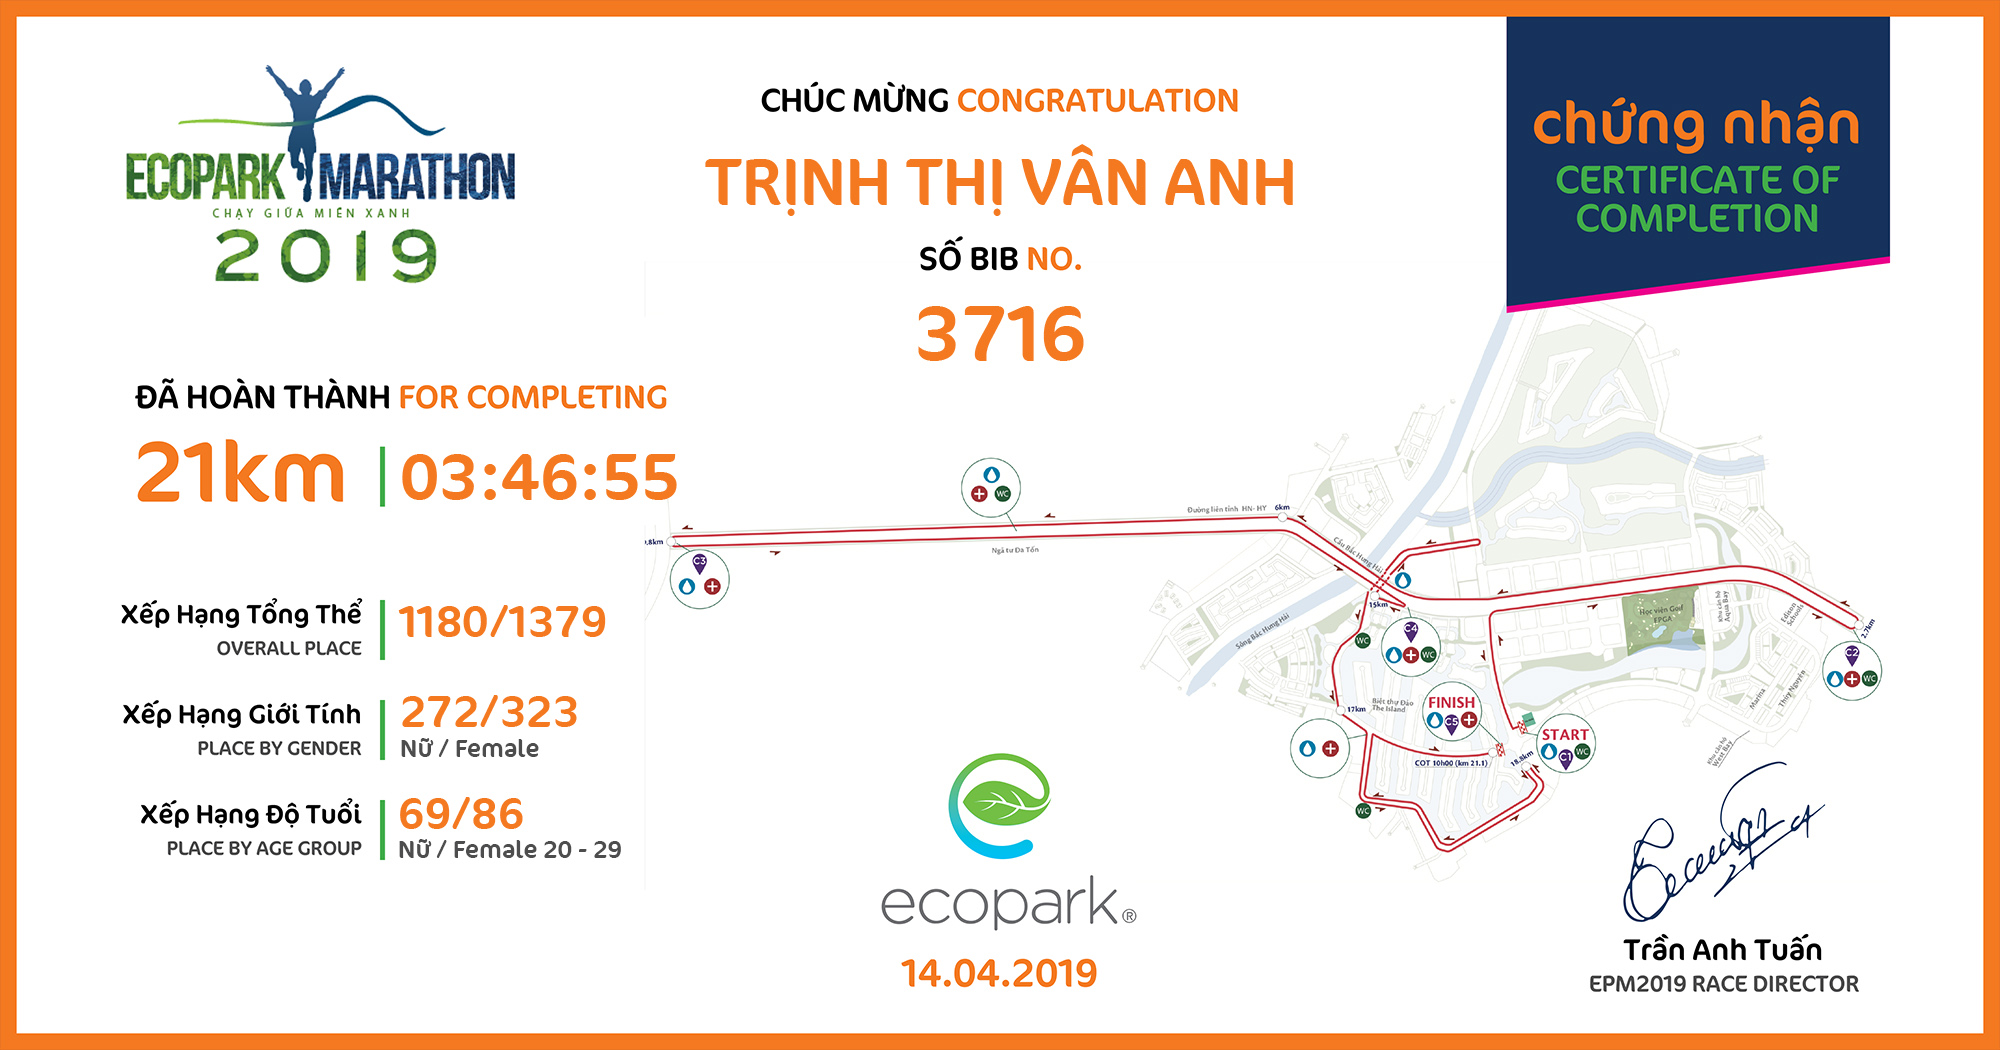 3716 - Trịnh Thị Vân Anh